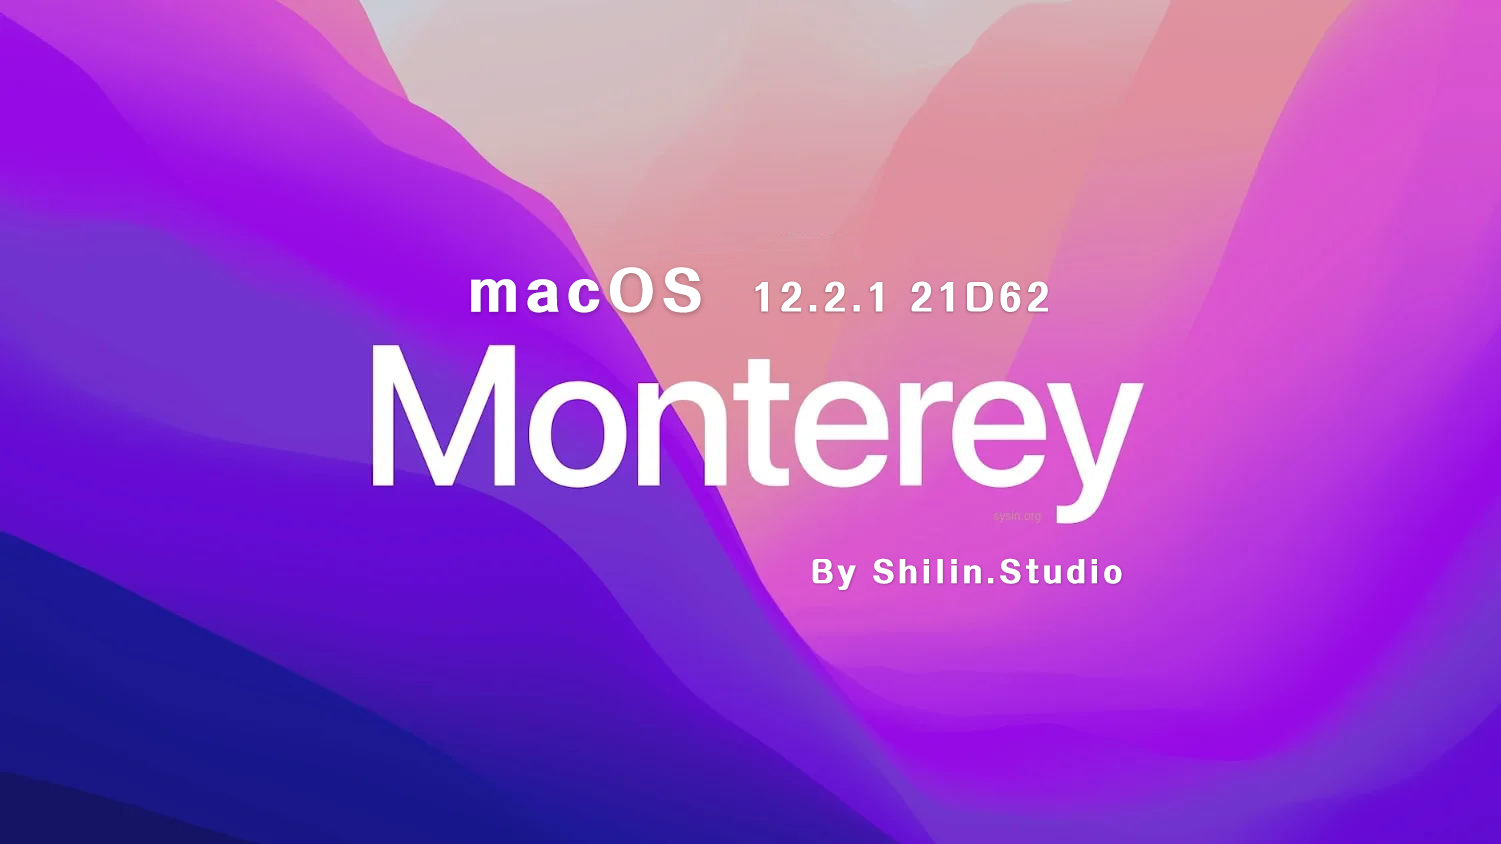 [macOS]macOS_Monterey_12.2.1_21D62_Shilin_Studio.rar可引导可虚拟机安装镜像包